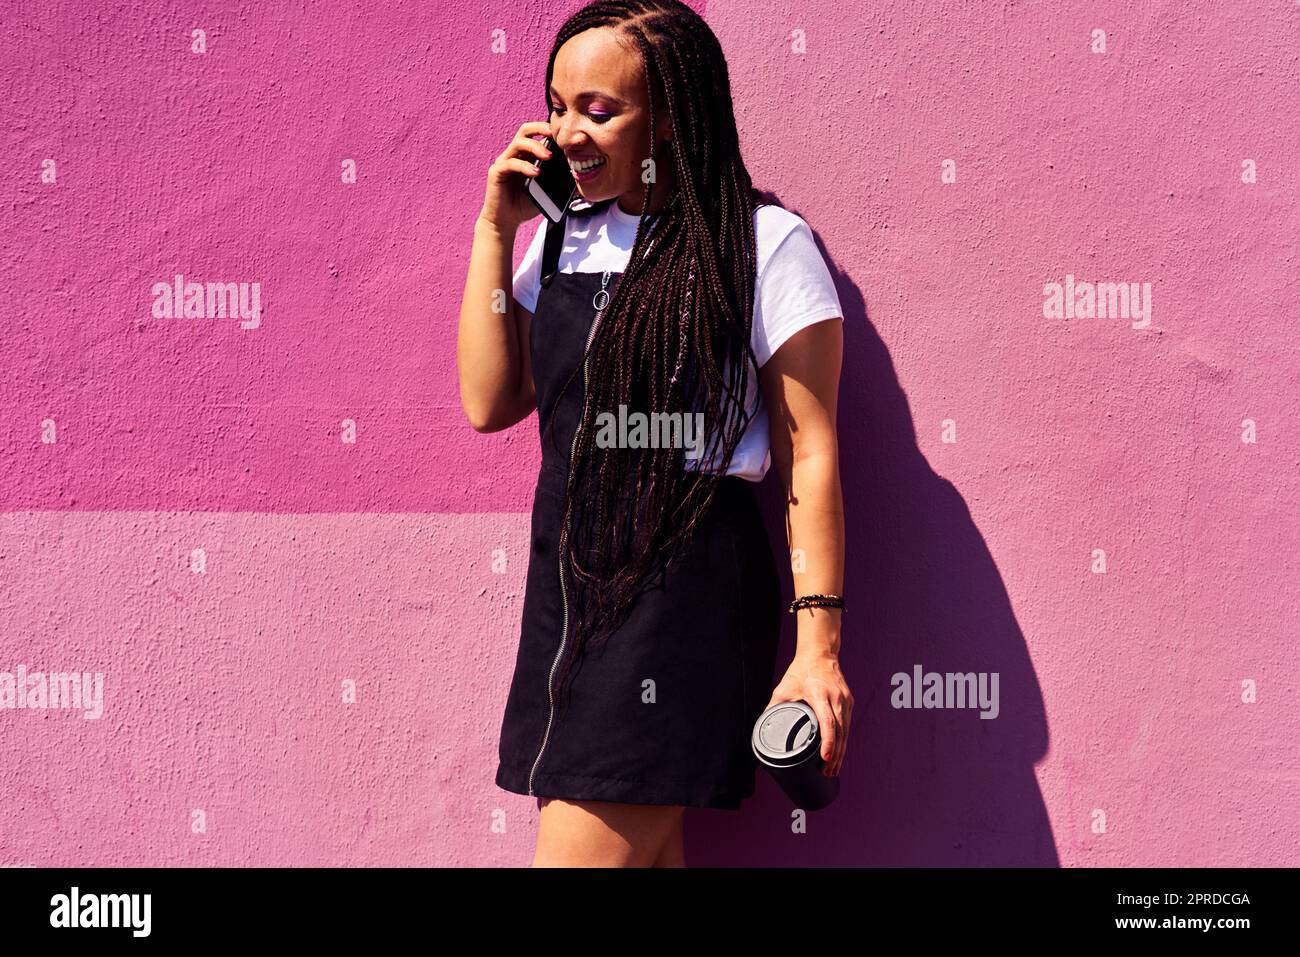 Mit der Technologie ist es so einfach, in Kontakt zu bleiben. Eine attraktive junge Frau, die allein an einer rosa Wand steht und auf ihrem Handy spricht. Stockfoto